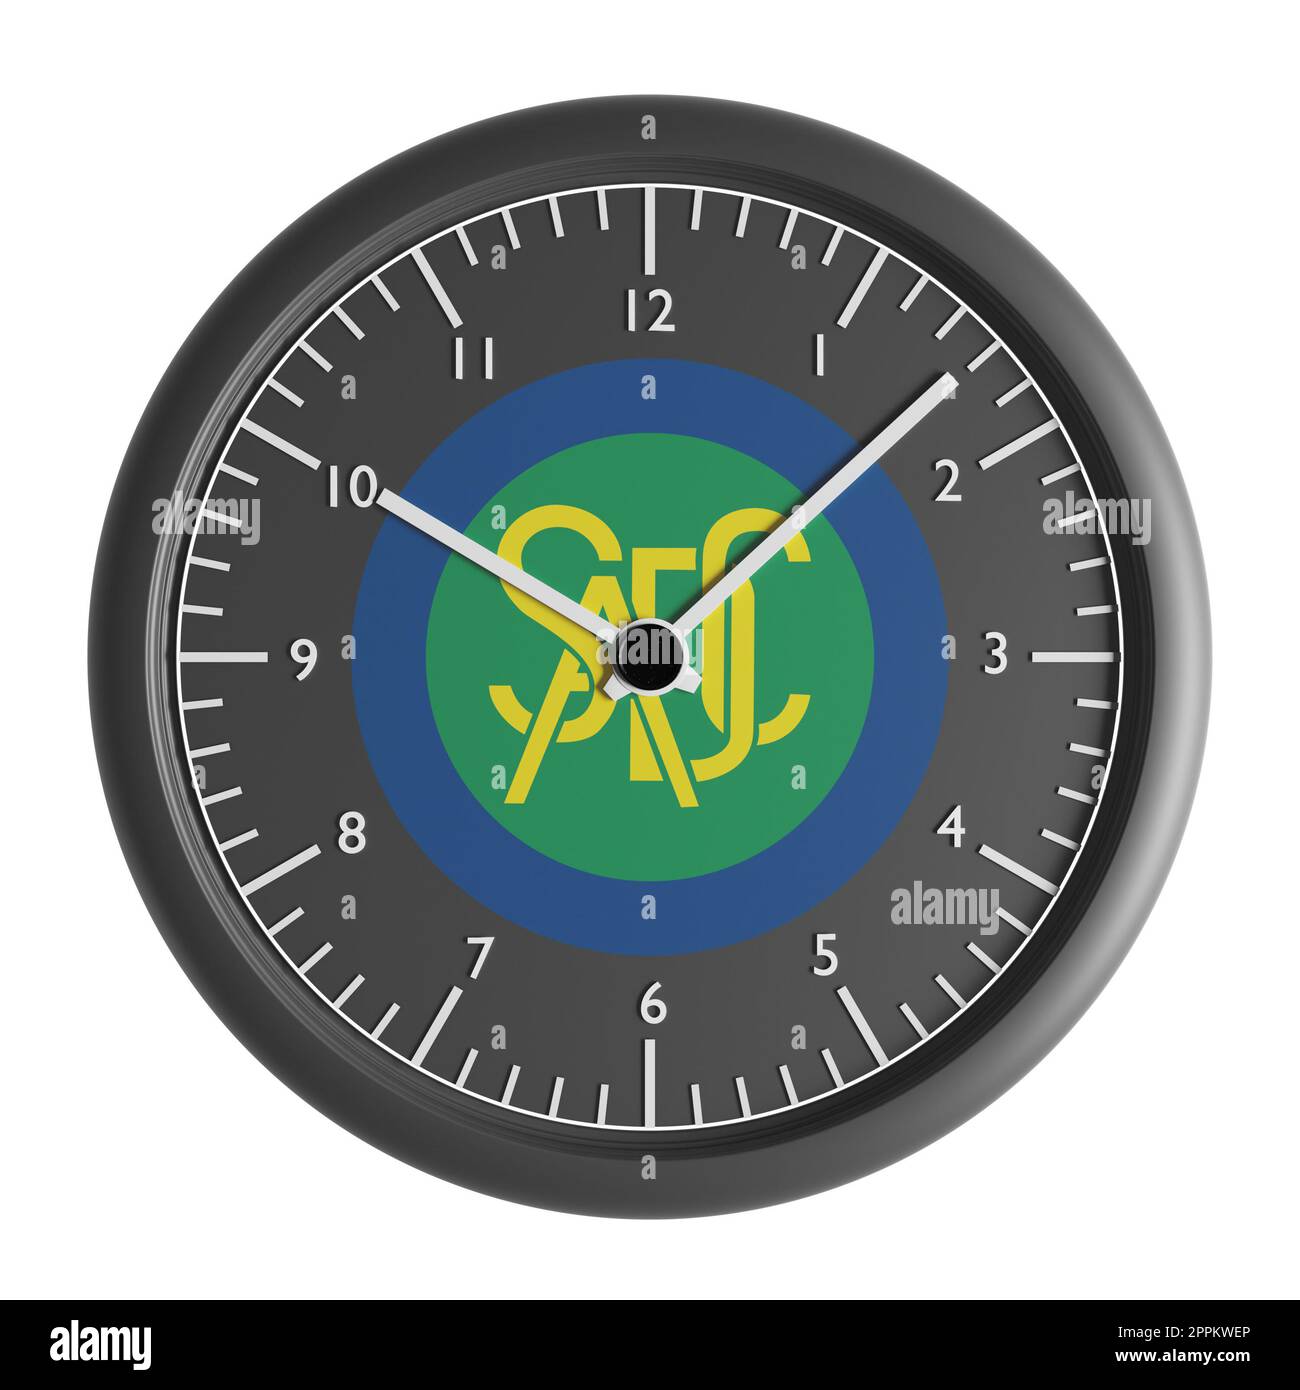 Signes et symboles. Elément de conception. 3D illustration. Horloge murale avec le drapeau de la Communauté de développement de l'Afrique australe Banque D'Images